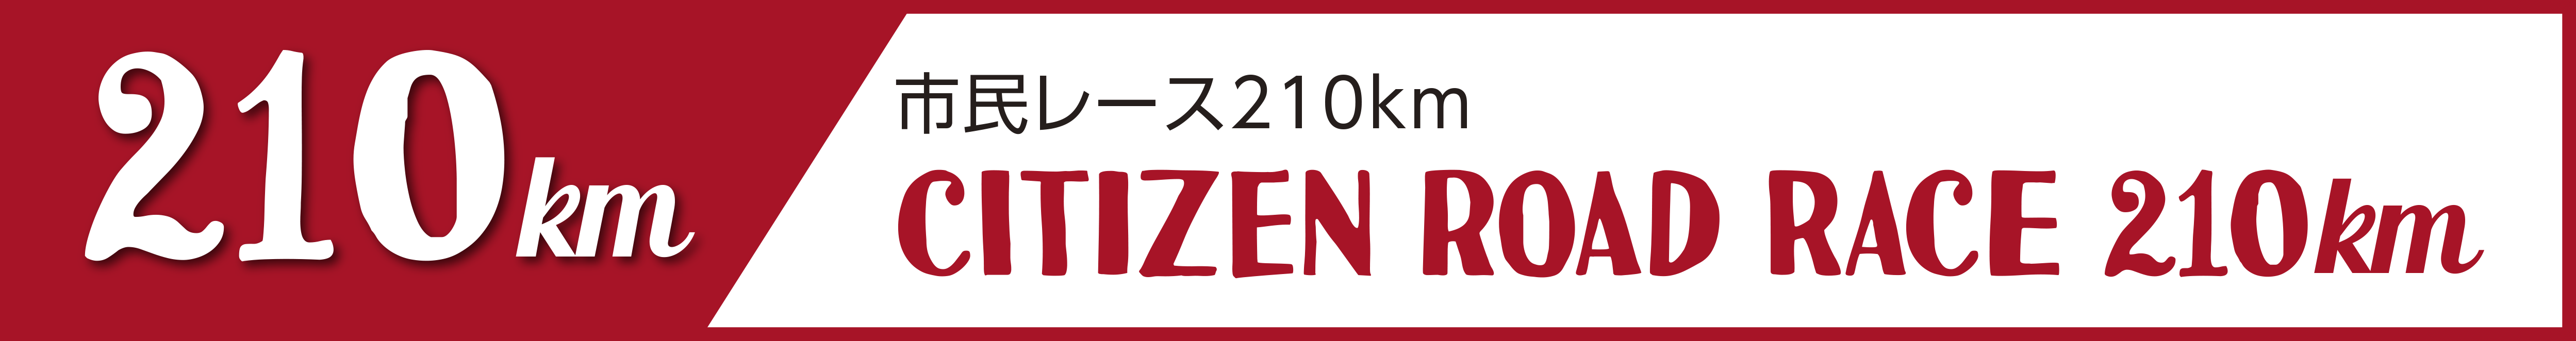 市民レース210km